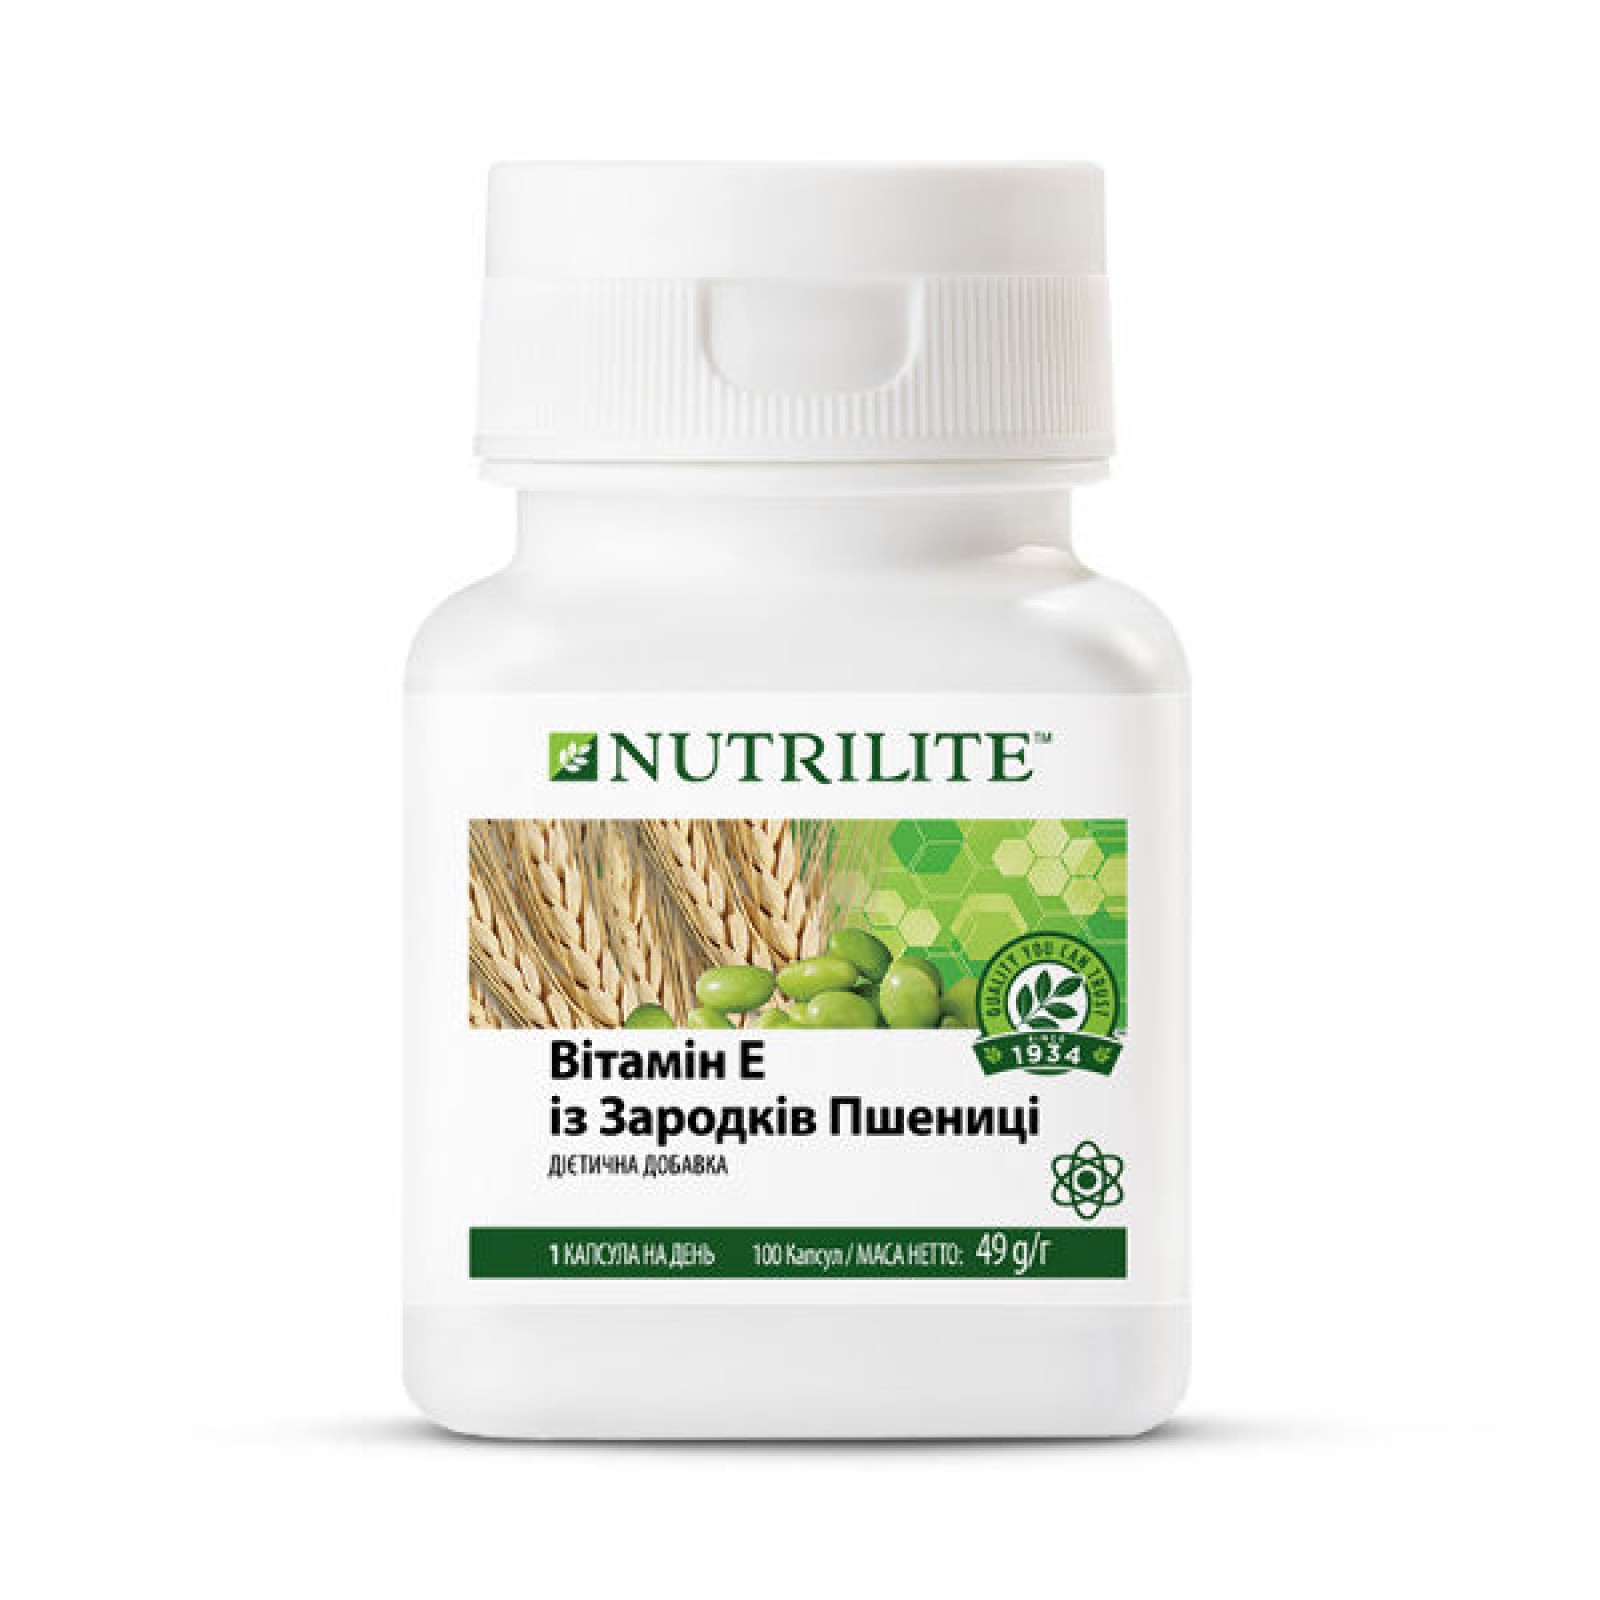 Nutrilite™ Вітамін Е із зародків пшениці 432971